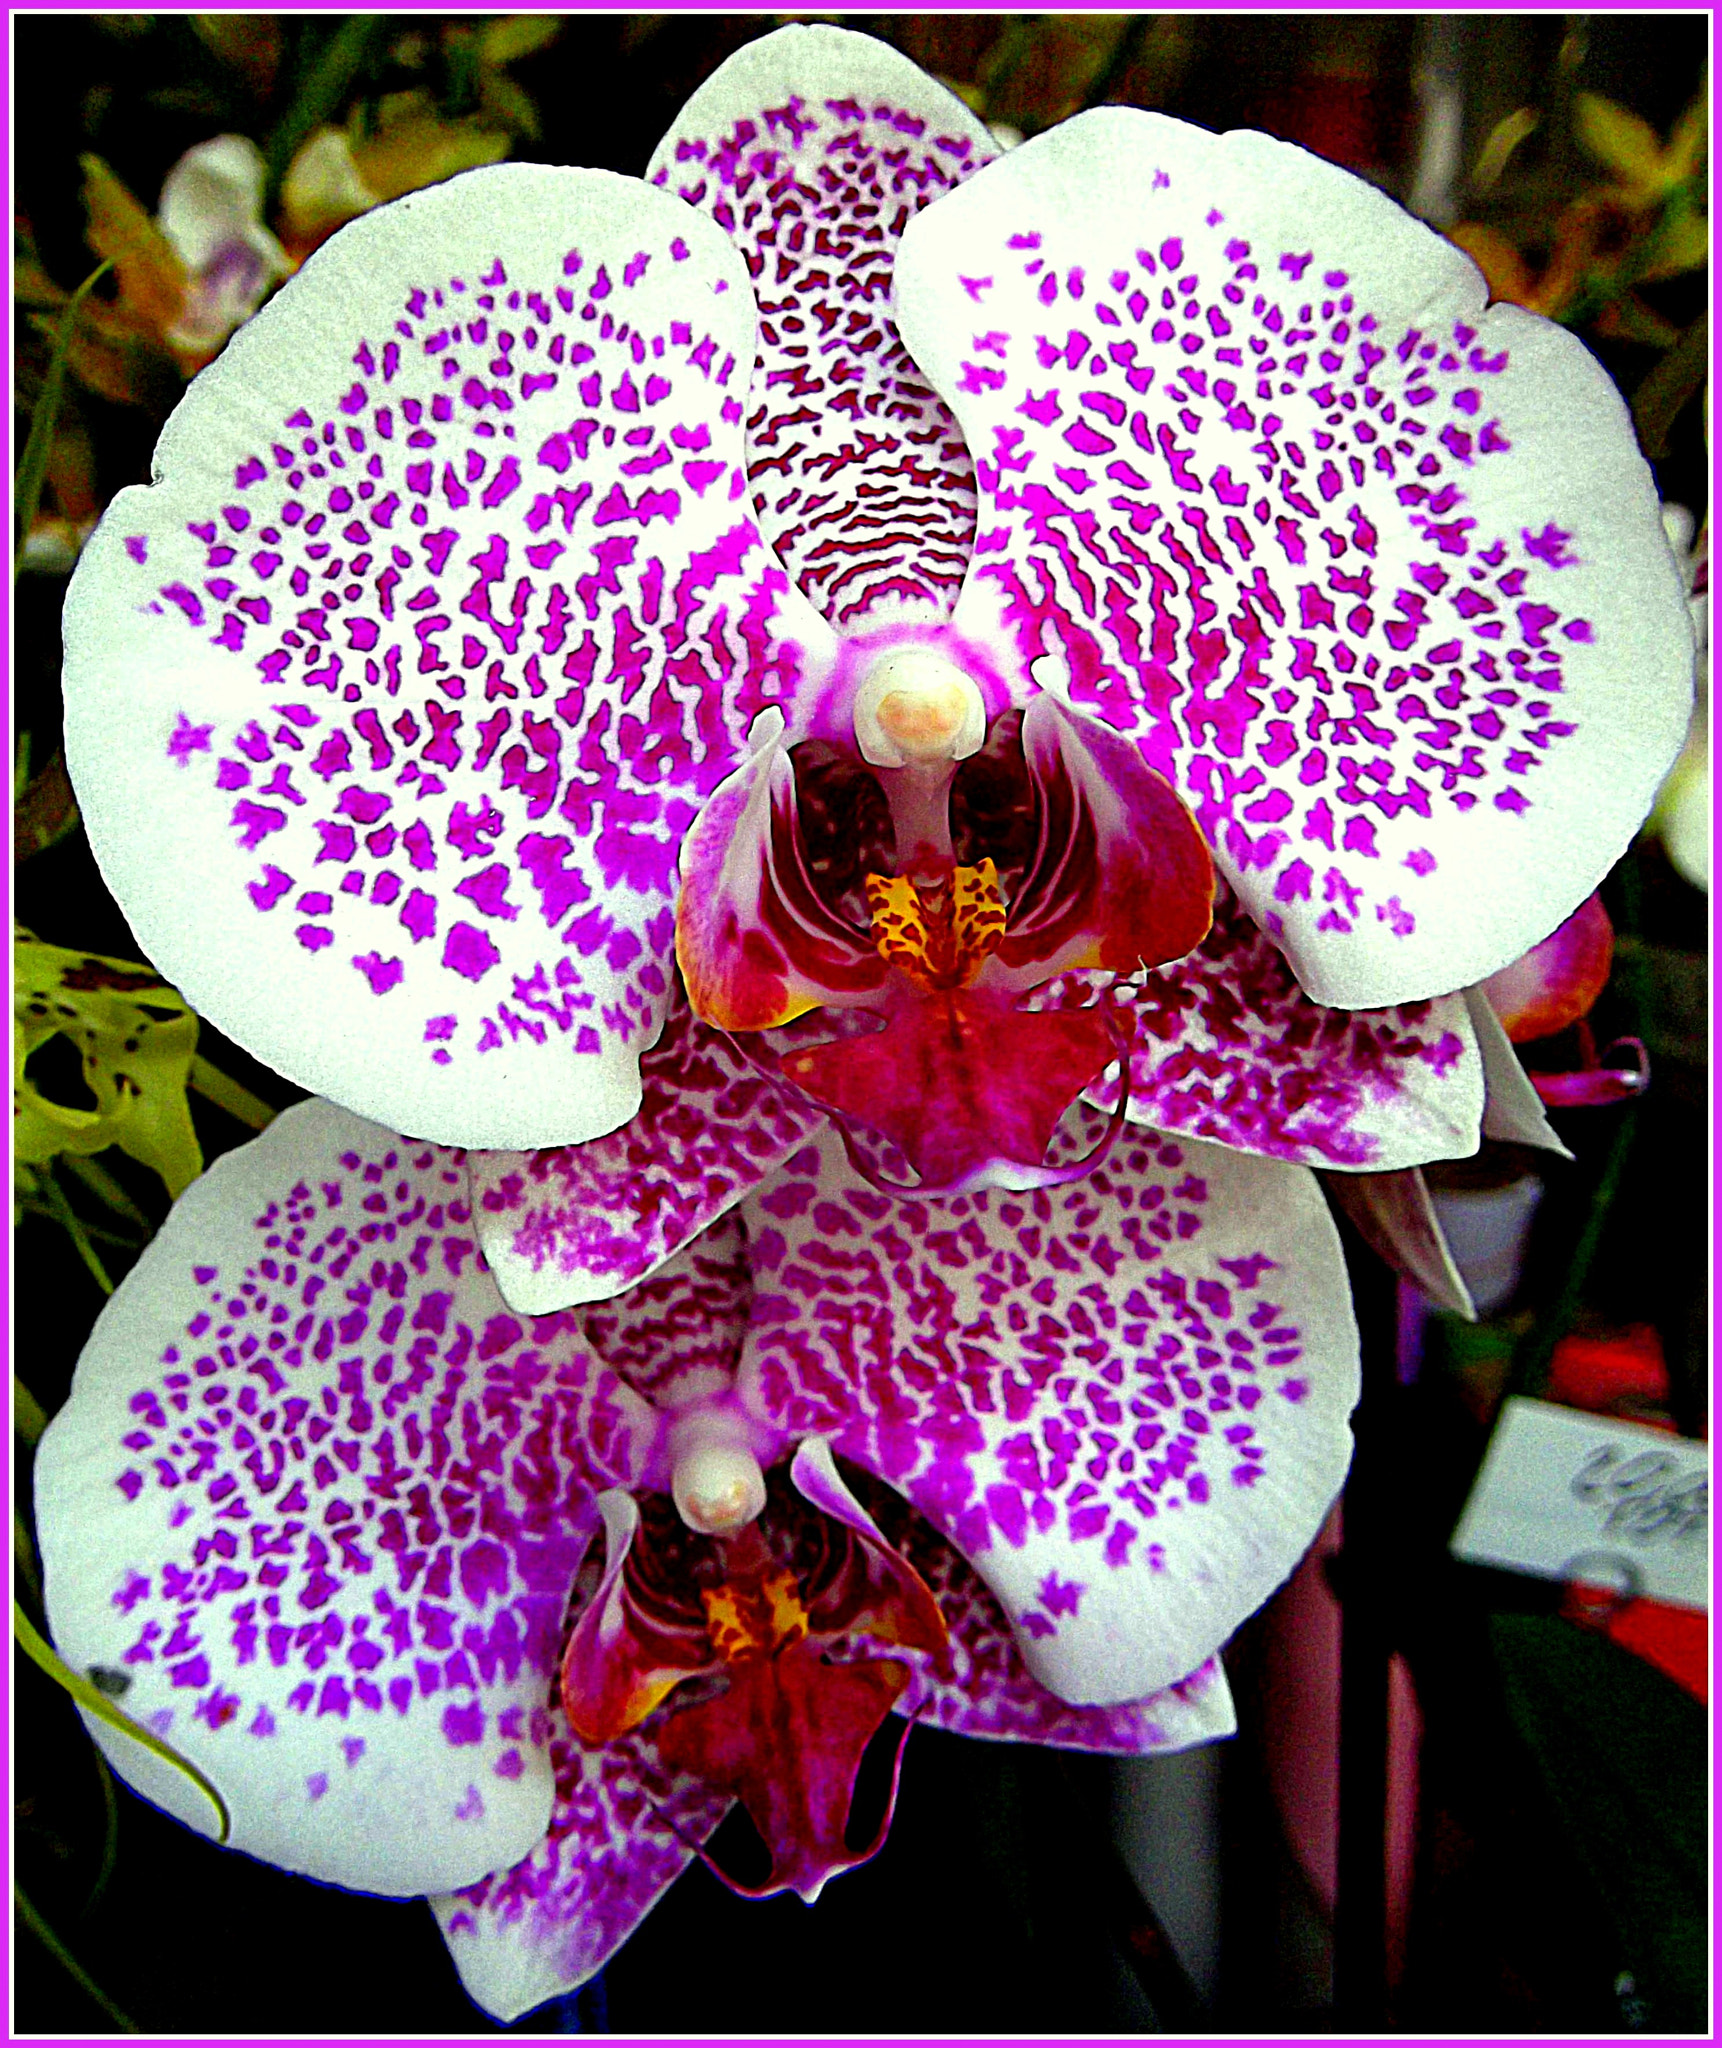 Fujifilm FinePix JX250 sample photo. Meravigliosa coppia di orchidee variegate: felice san valentino a tutti gli innamorati. photography